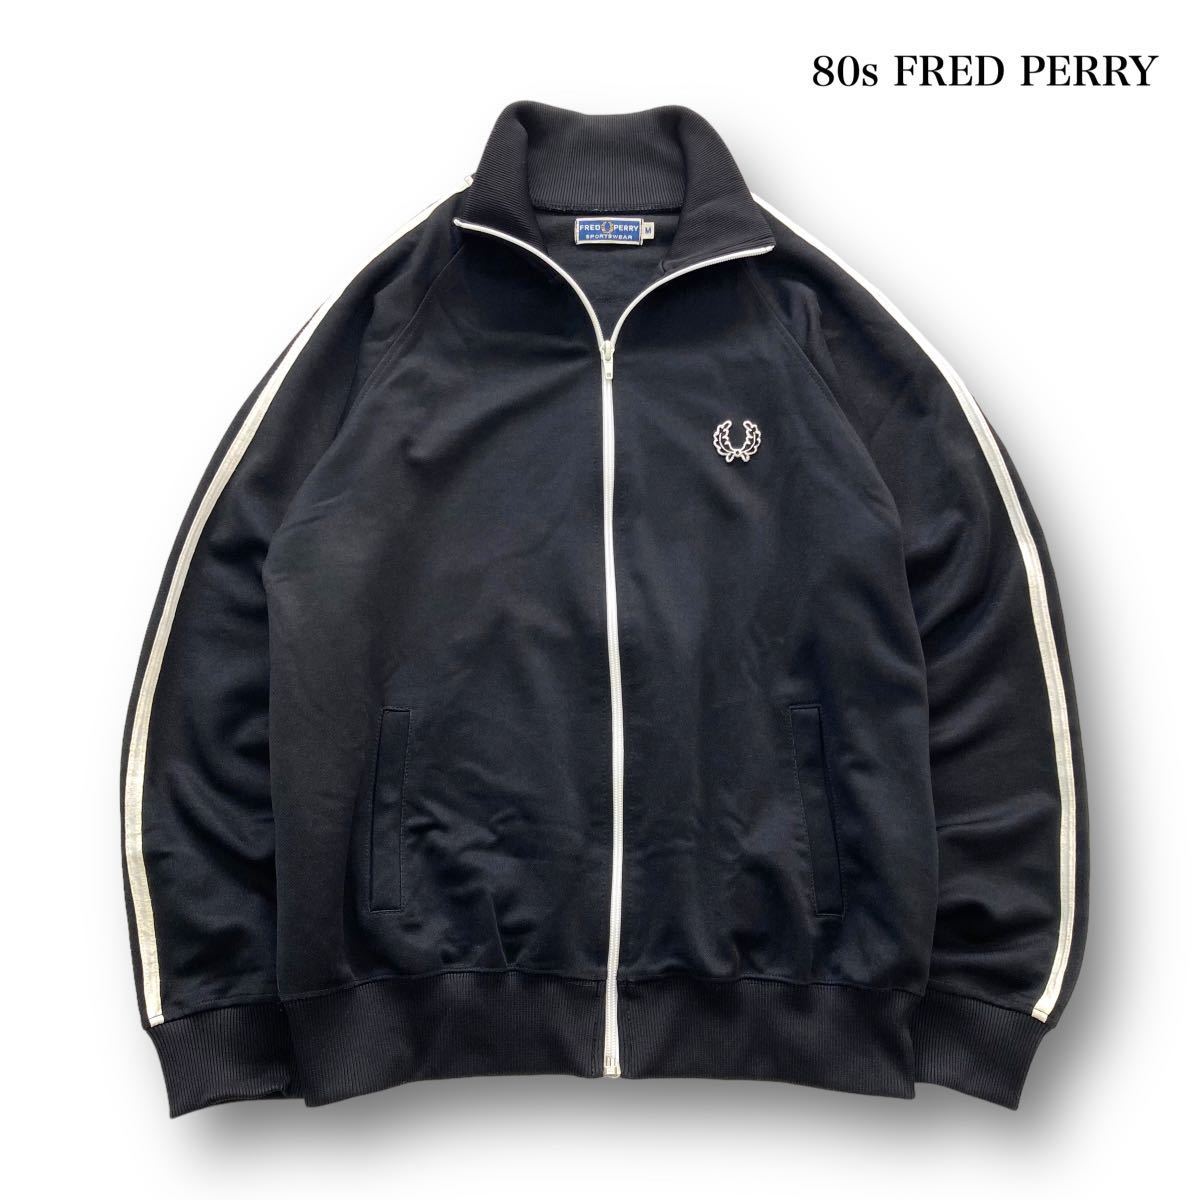 【FRED PERRY】80s フレッドペリー トラックジャケット ジャージ ポルトガル製 ヴィンテージ 80年代 袖ライン 旧ロゴ ブラック 黒  (M)